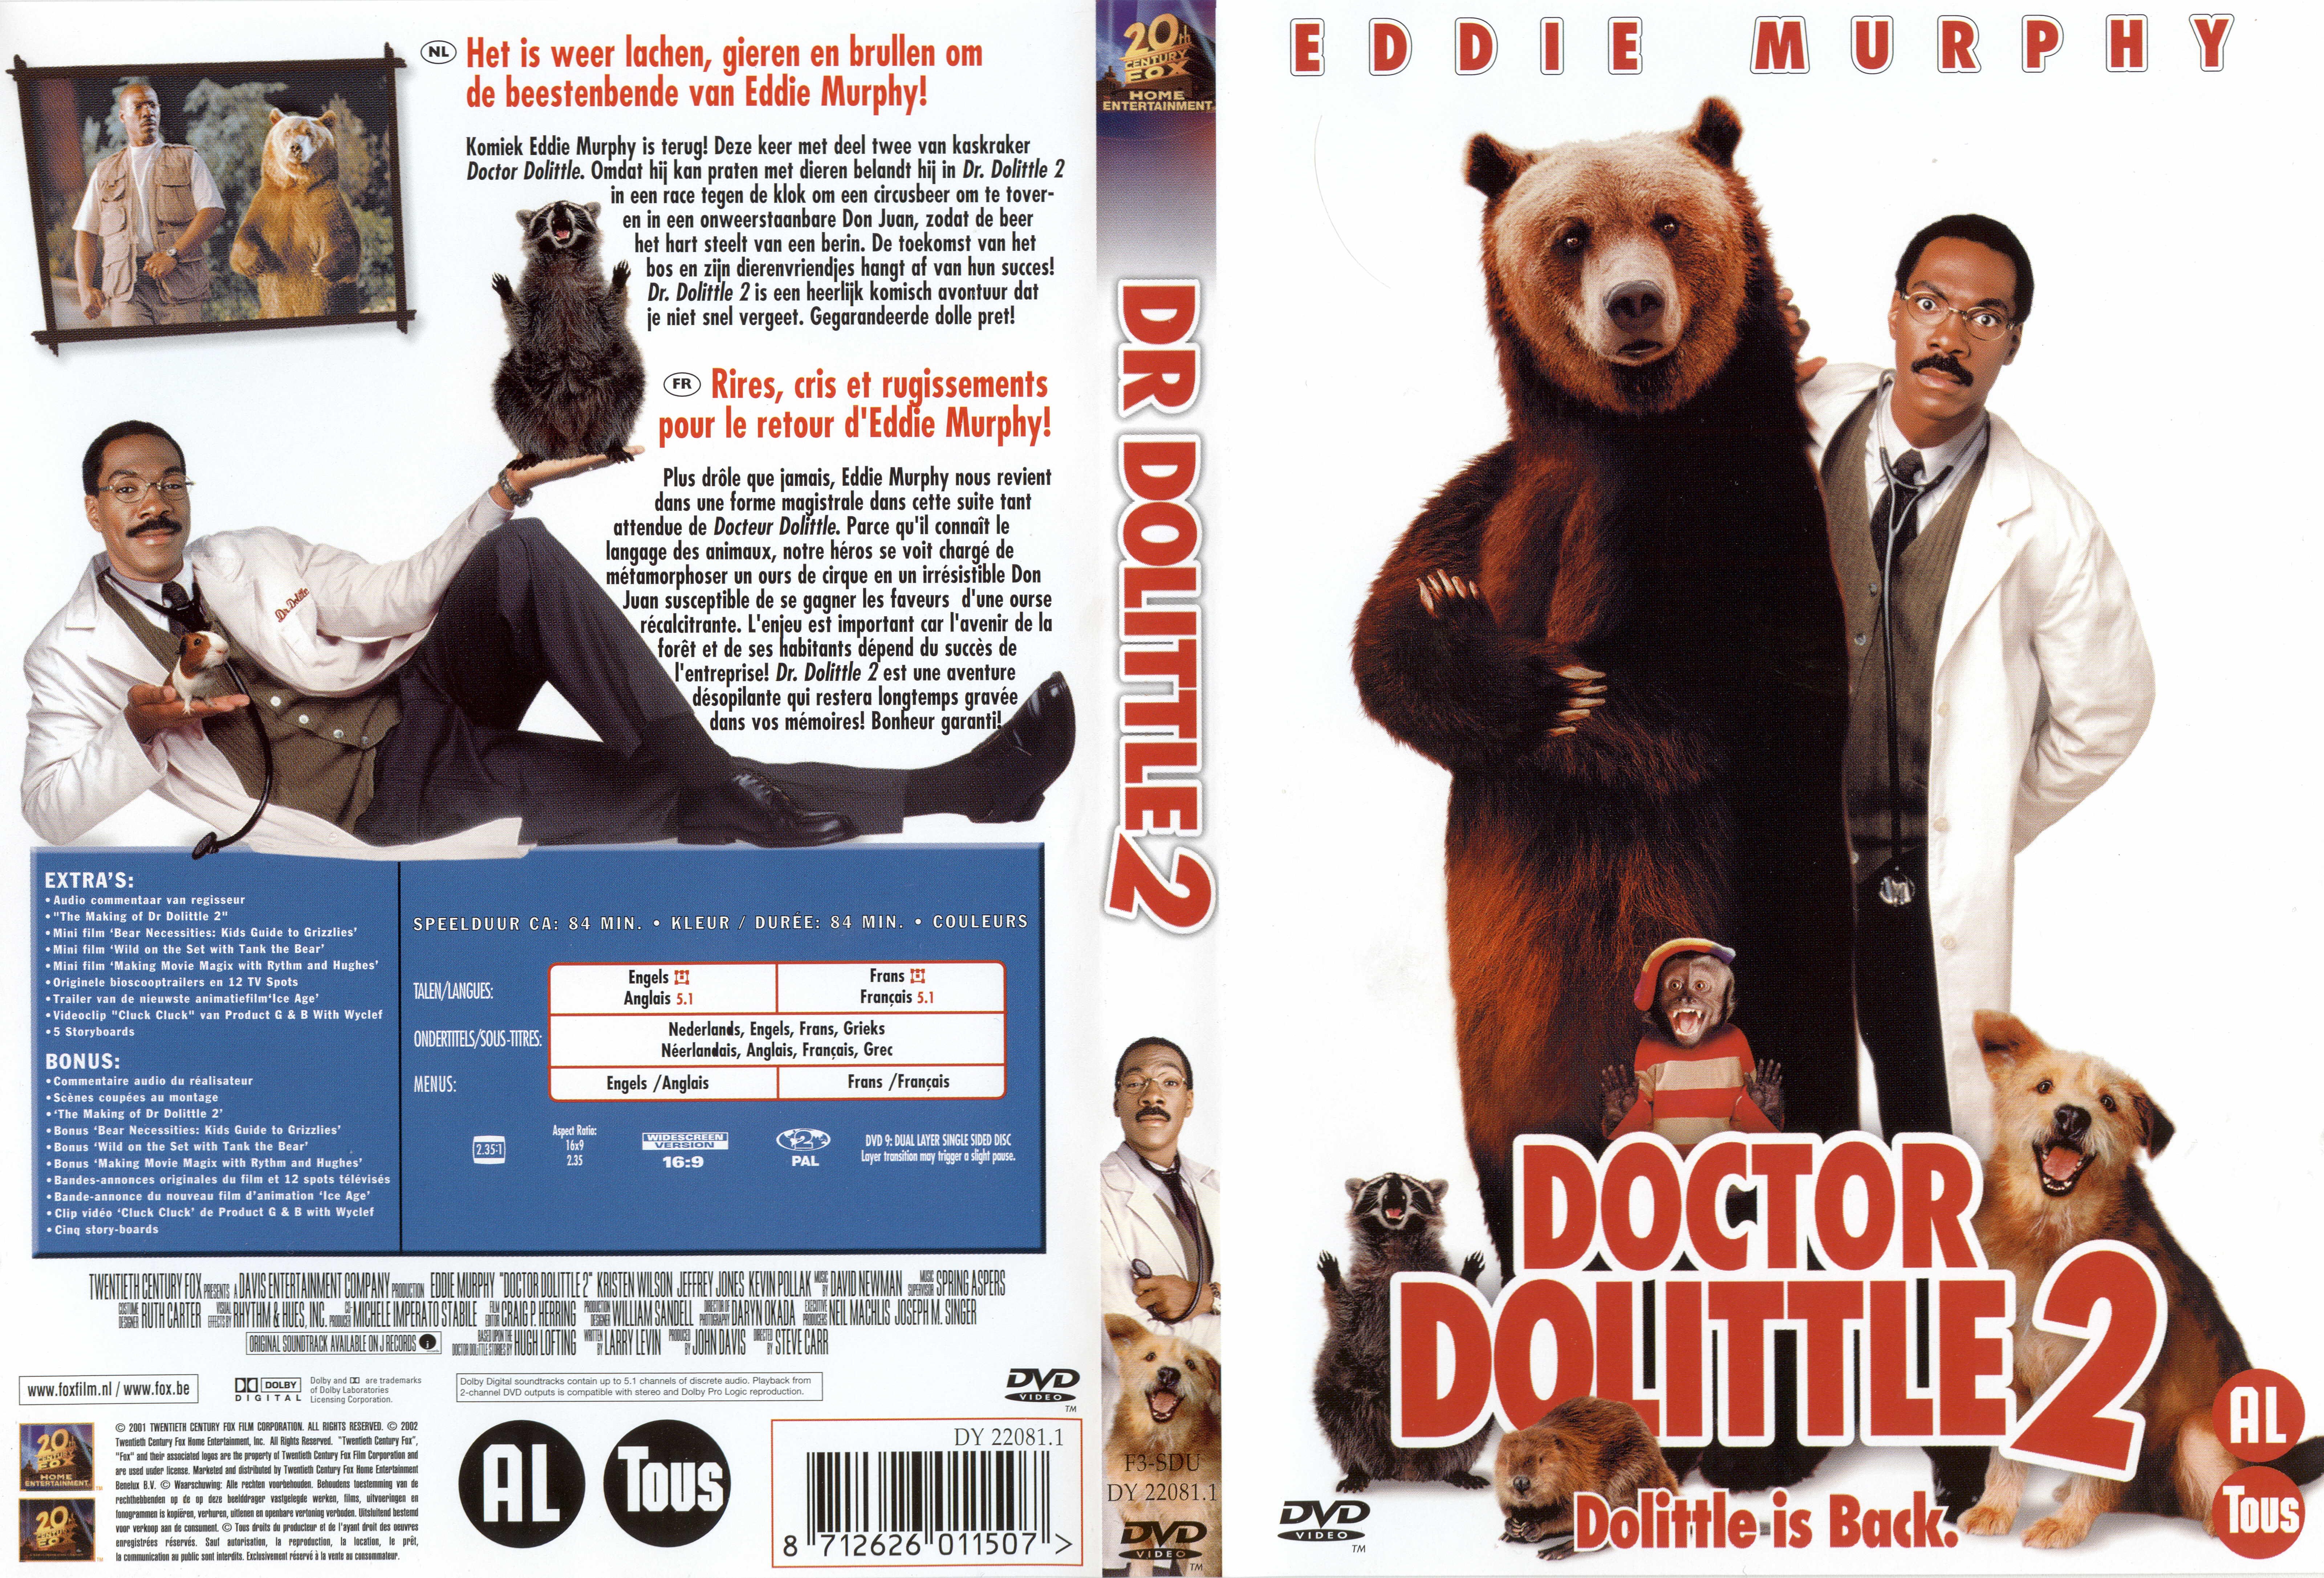 Jaquette DVD Docteur Dolittle 2 v2